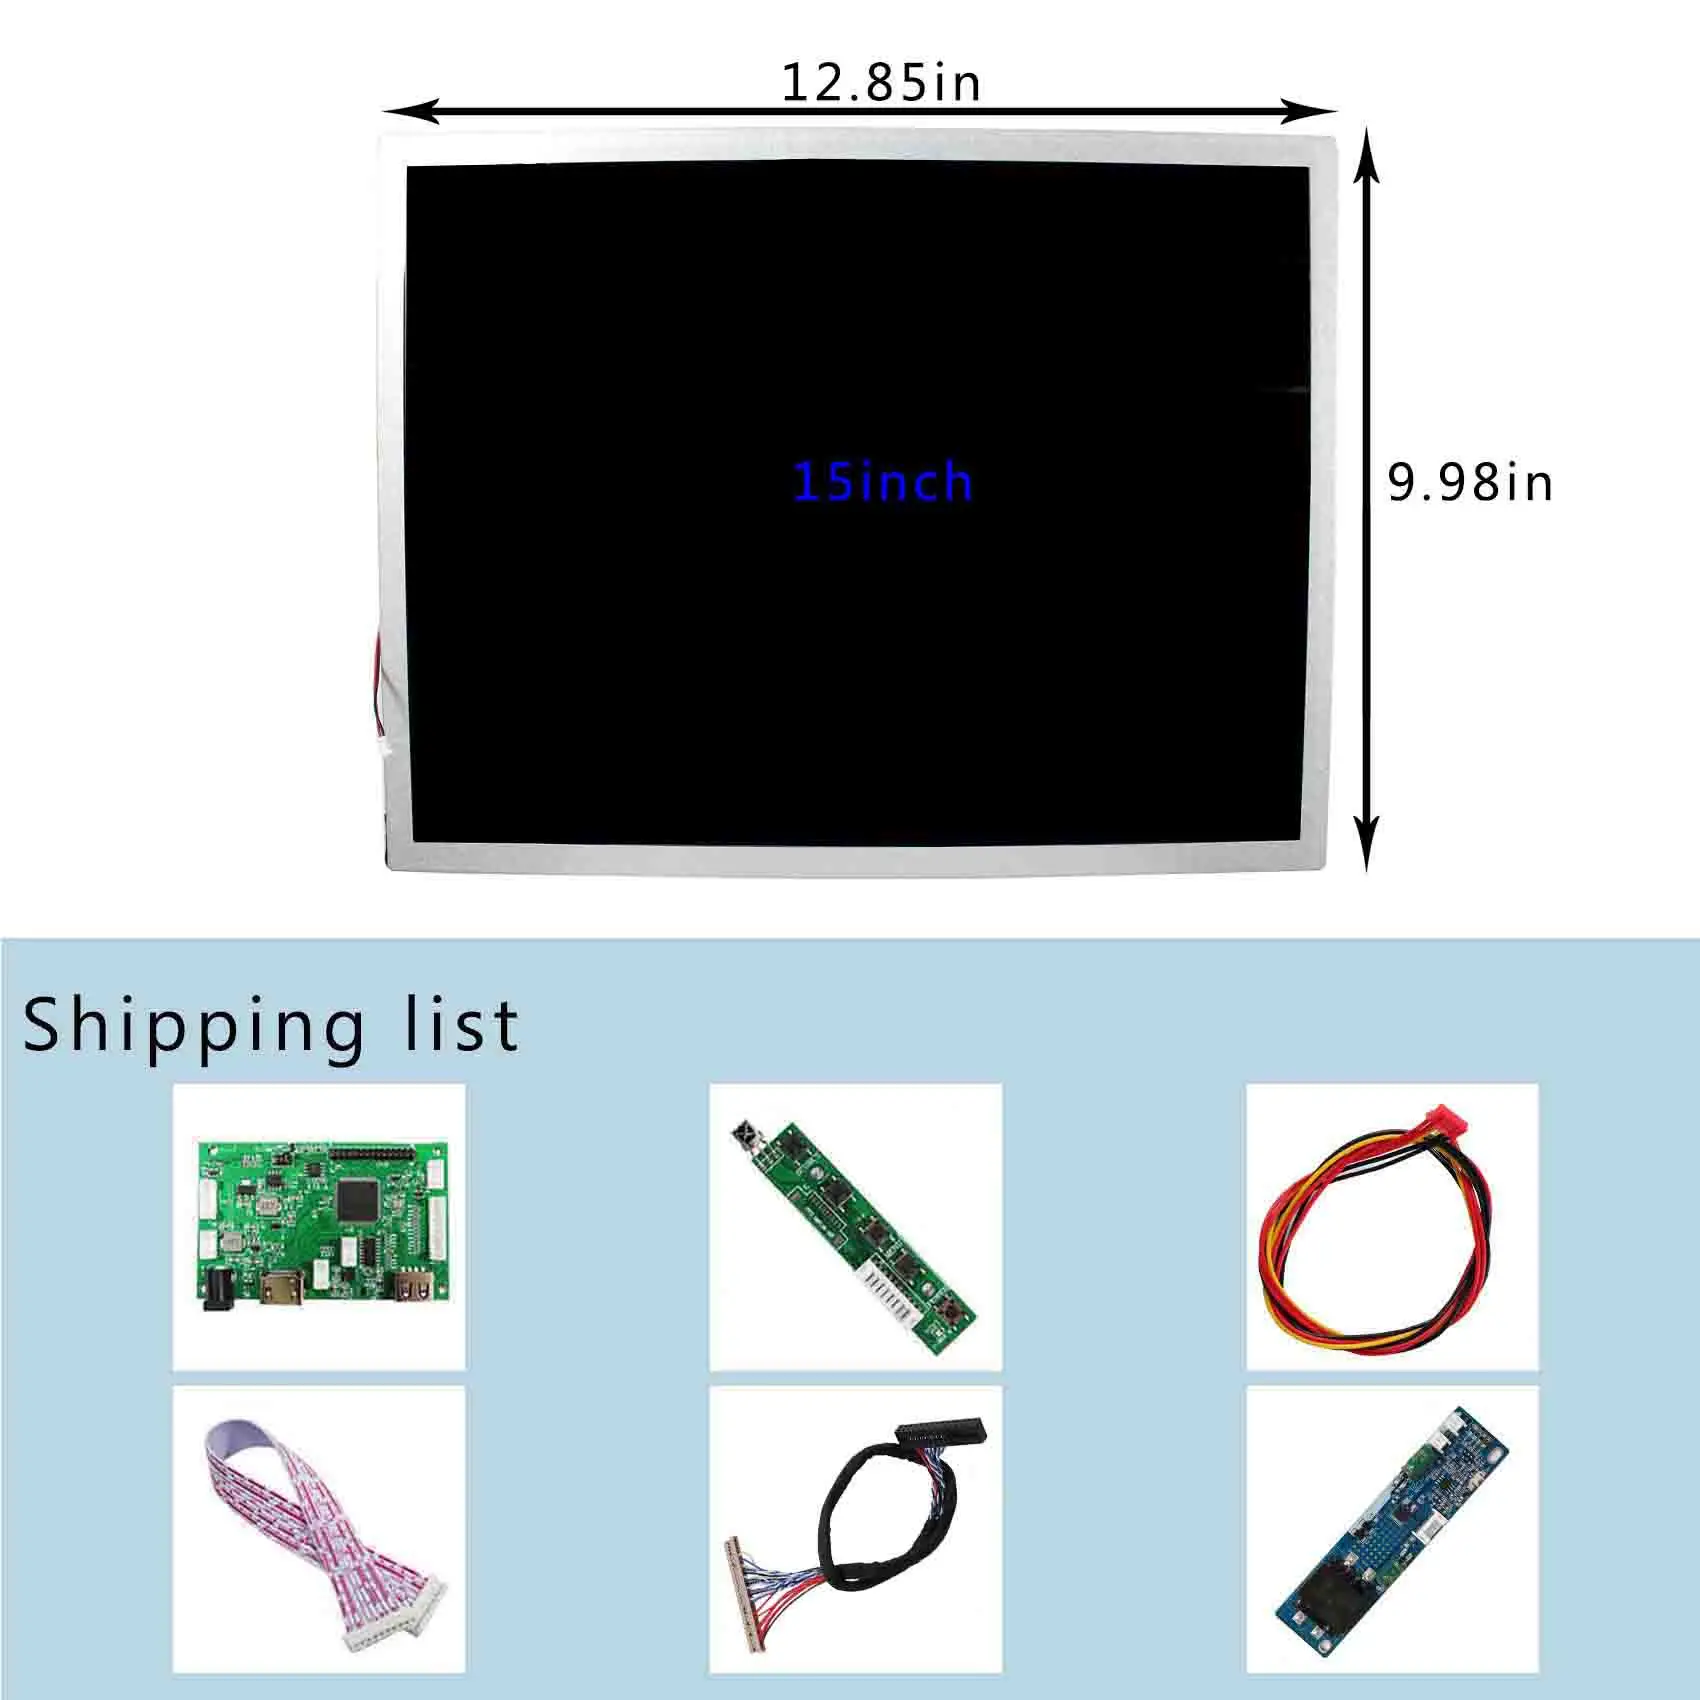 15inch 1000nit חיצונית 1024x768 מסך LCD HDMI USB LCD בקר הלוח